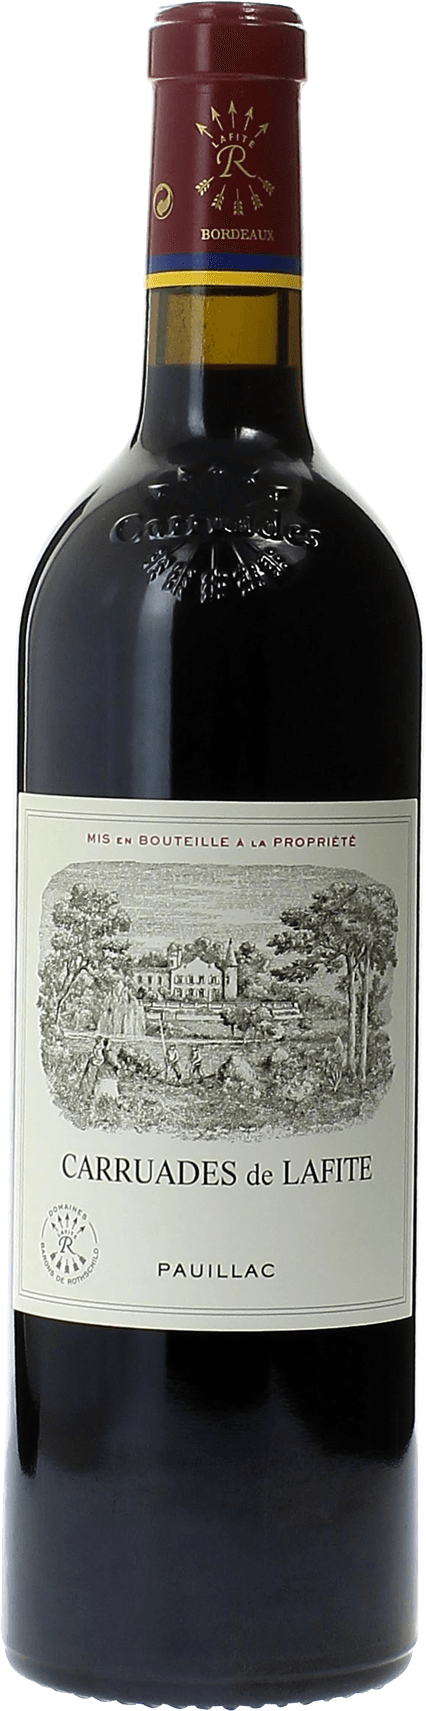 Carruades de lafite 1995 2me vin de LAFITE ROTHSCHILD Pauillac, Bordeaux rouge